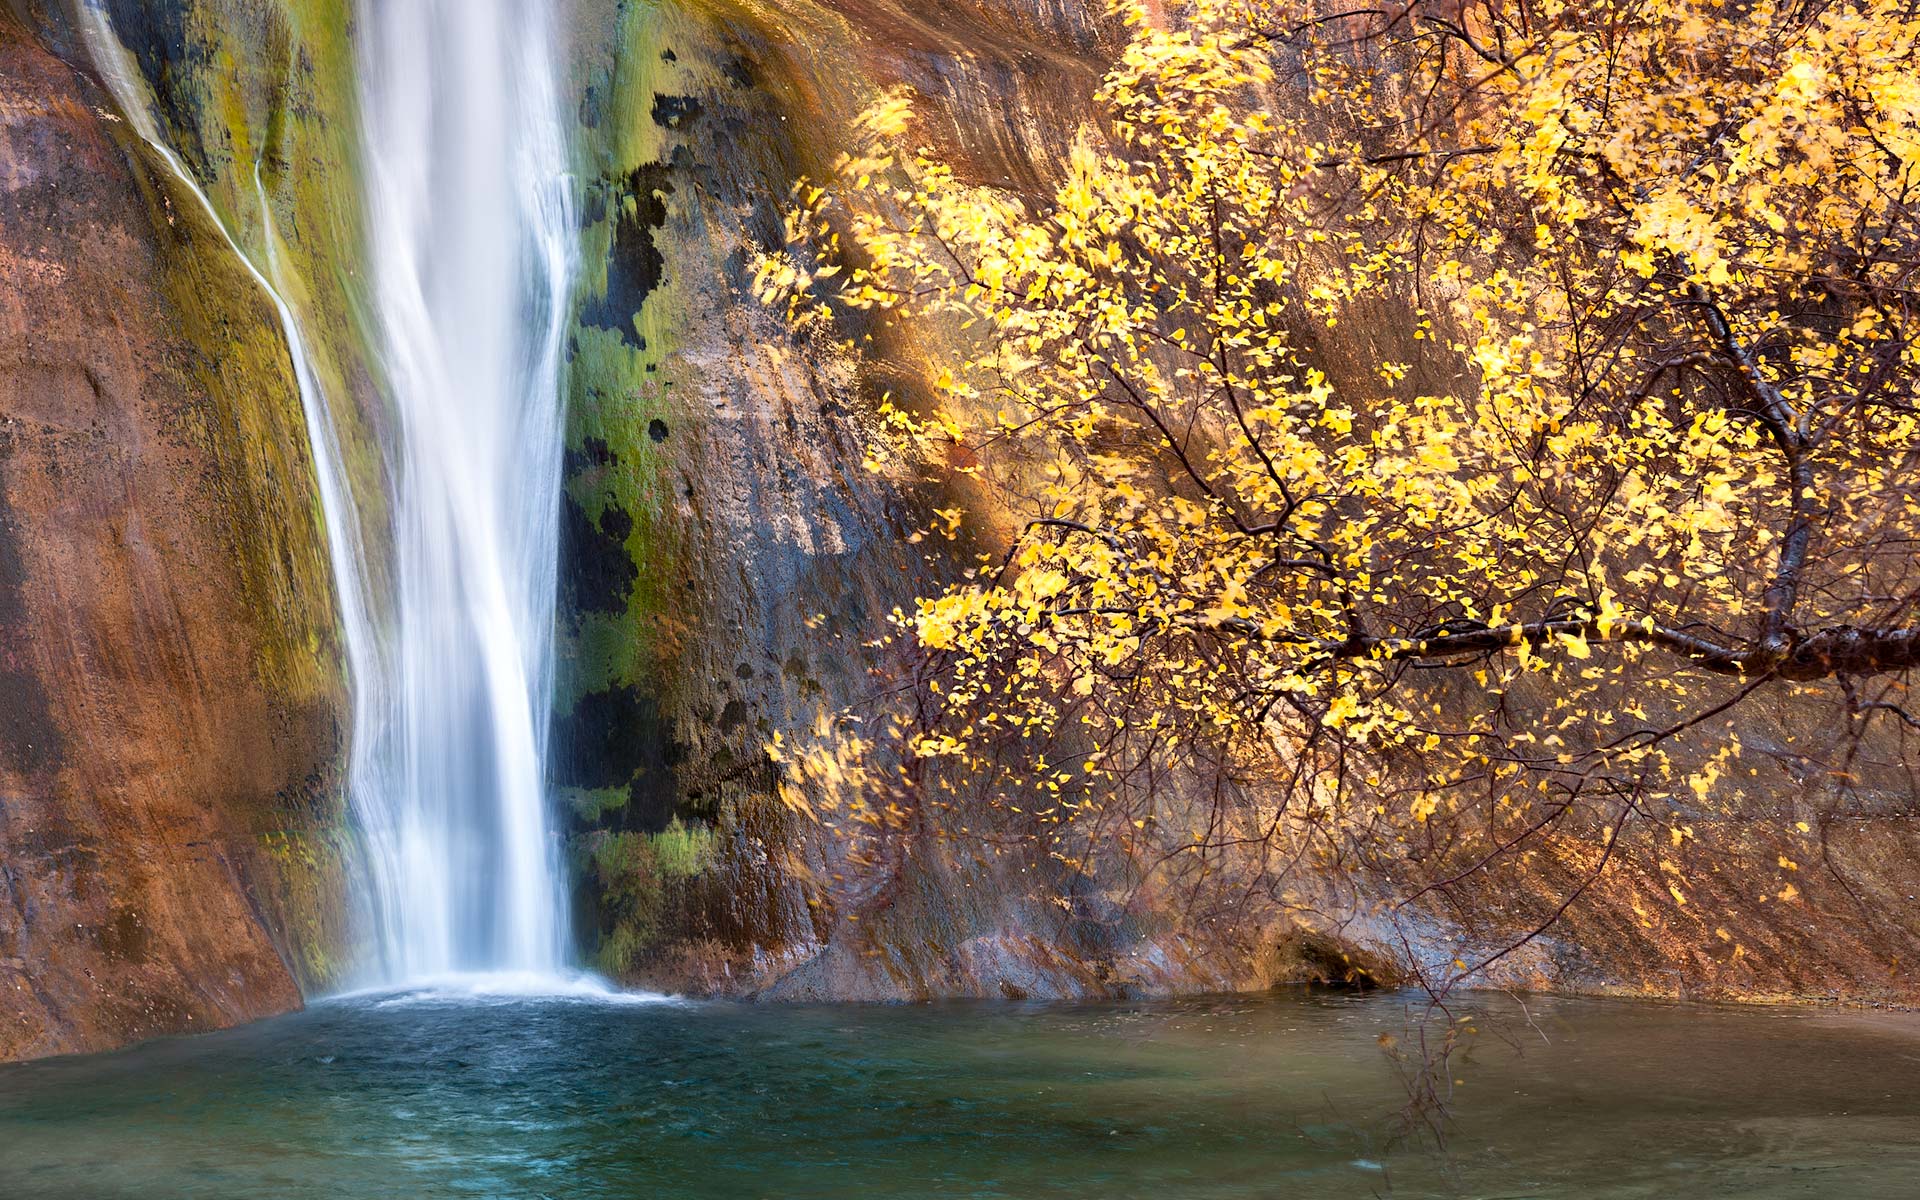 Lower Calf Creek Falls, Utah